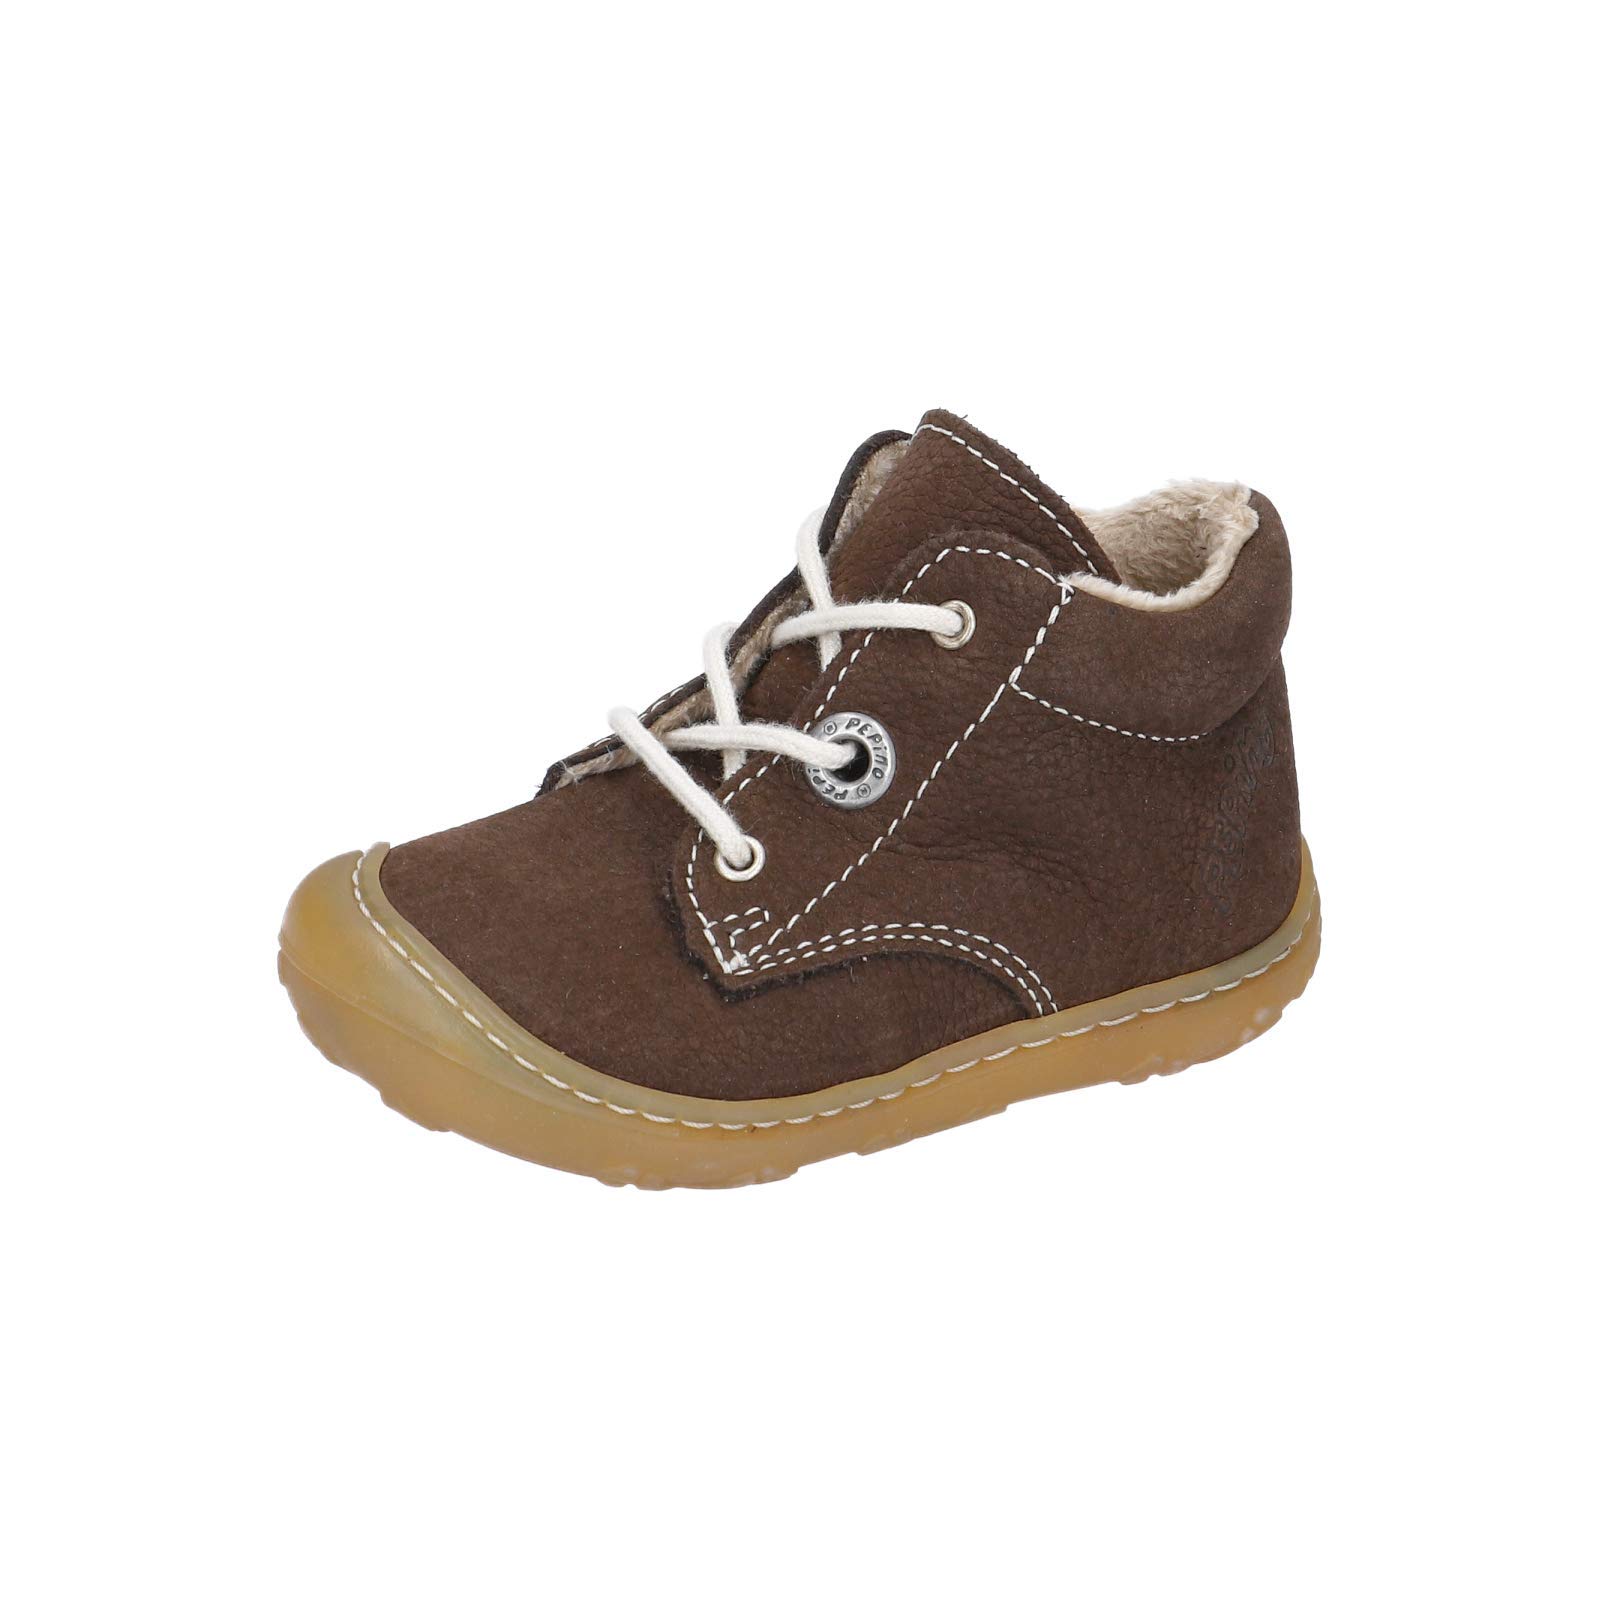 RICOSTA Unisex - Kinder Lauflern Schuhe CORANY von Pepino, Weite: Mittel (WMS),terracare, schnürschuh schnürstiefelchen,Marone,18 EU / 2 Child UK